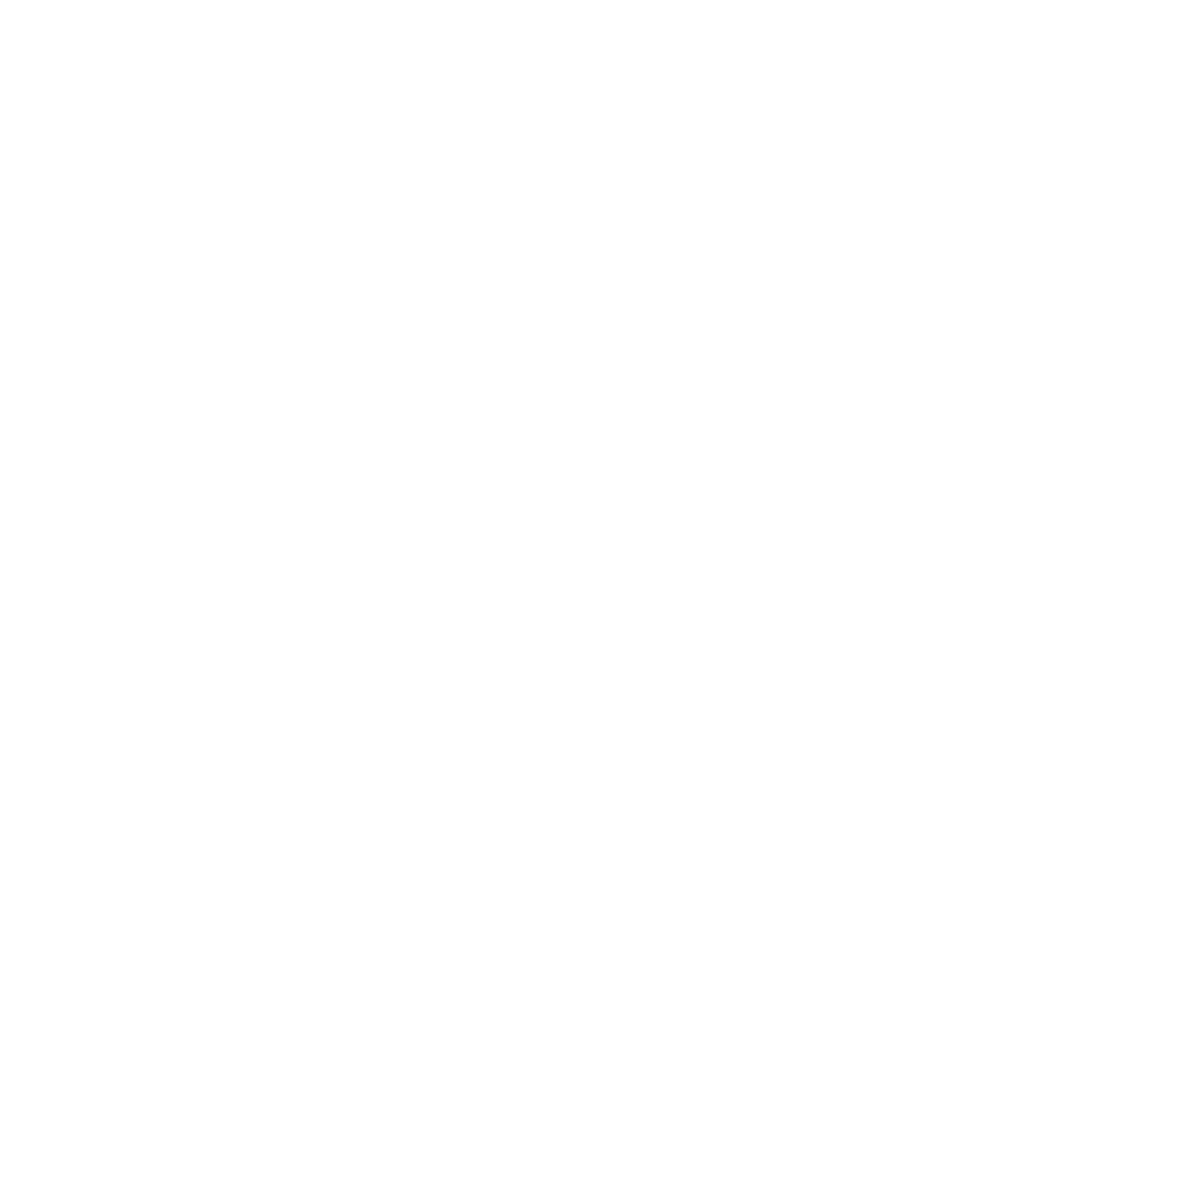 Hacienda logo - White